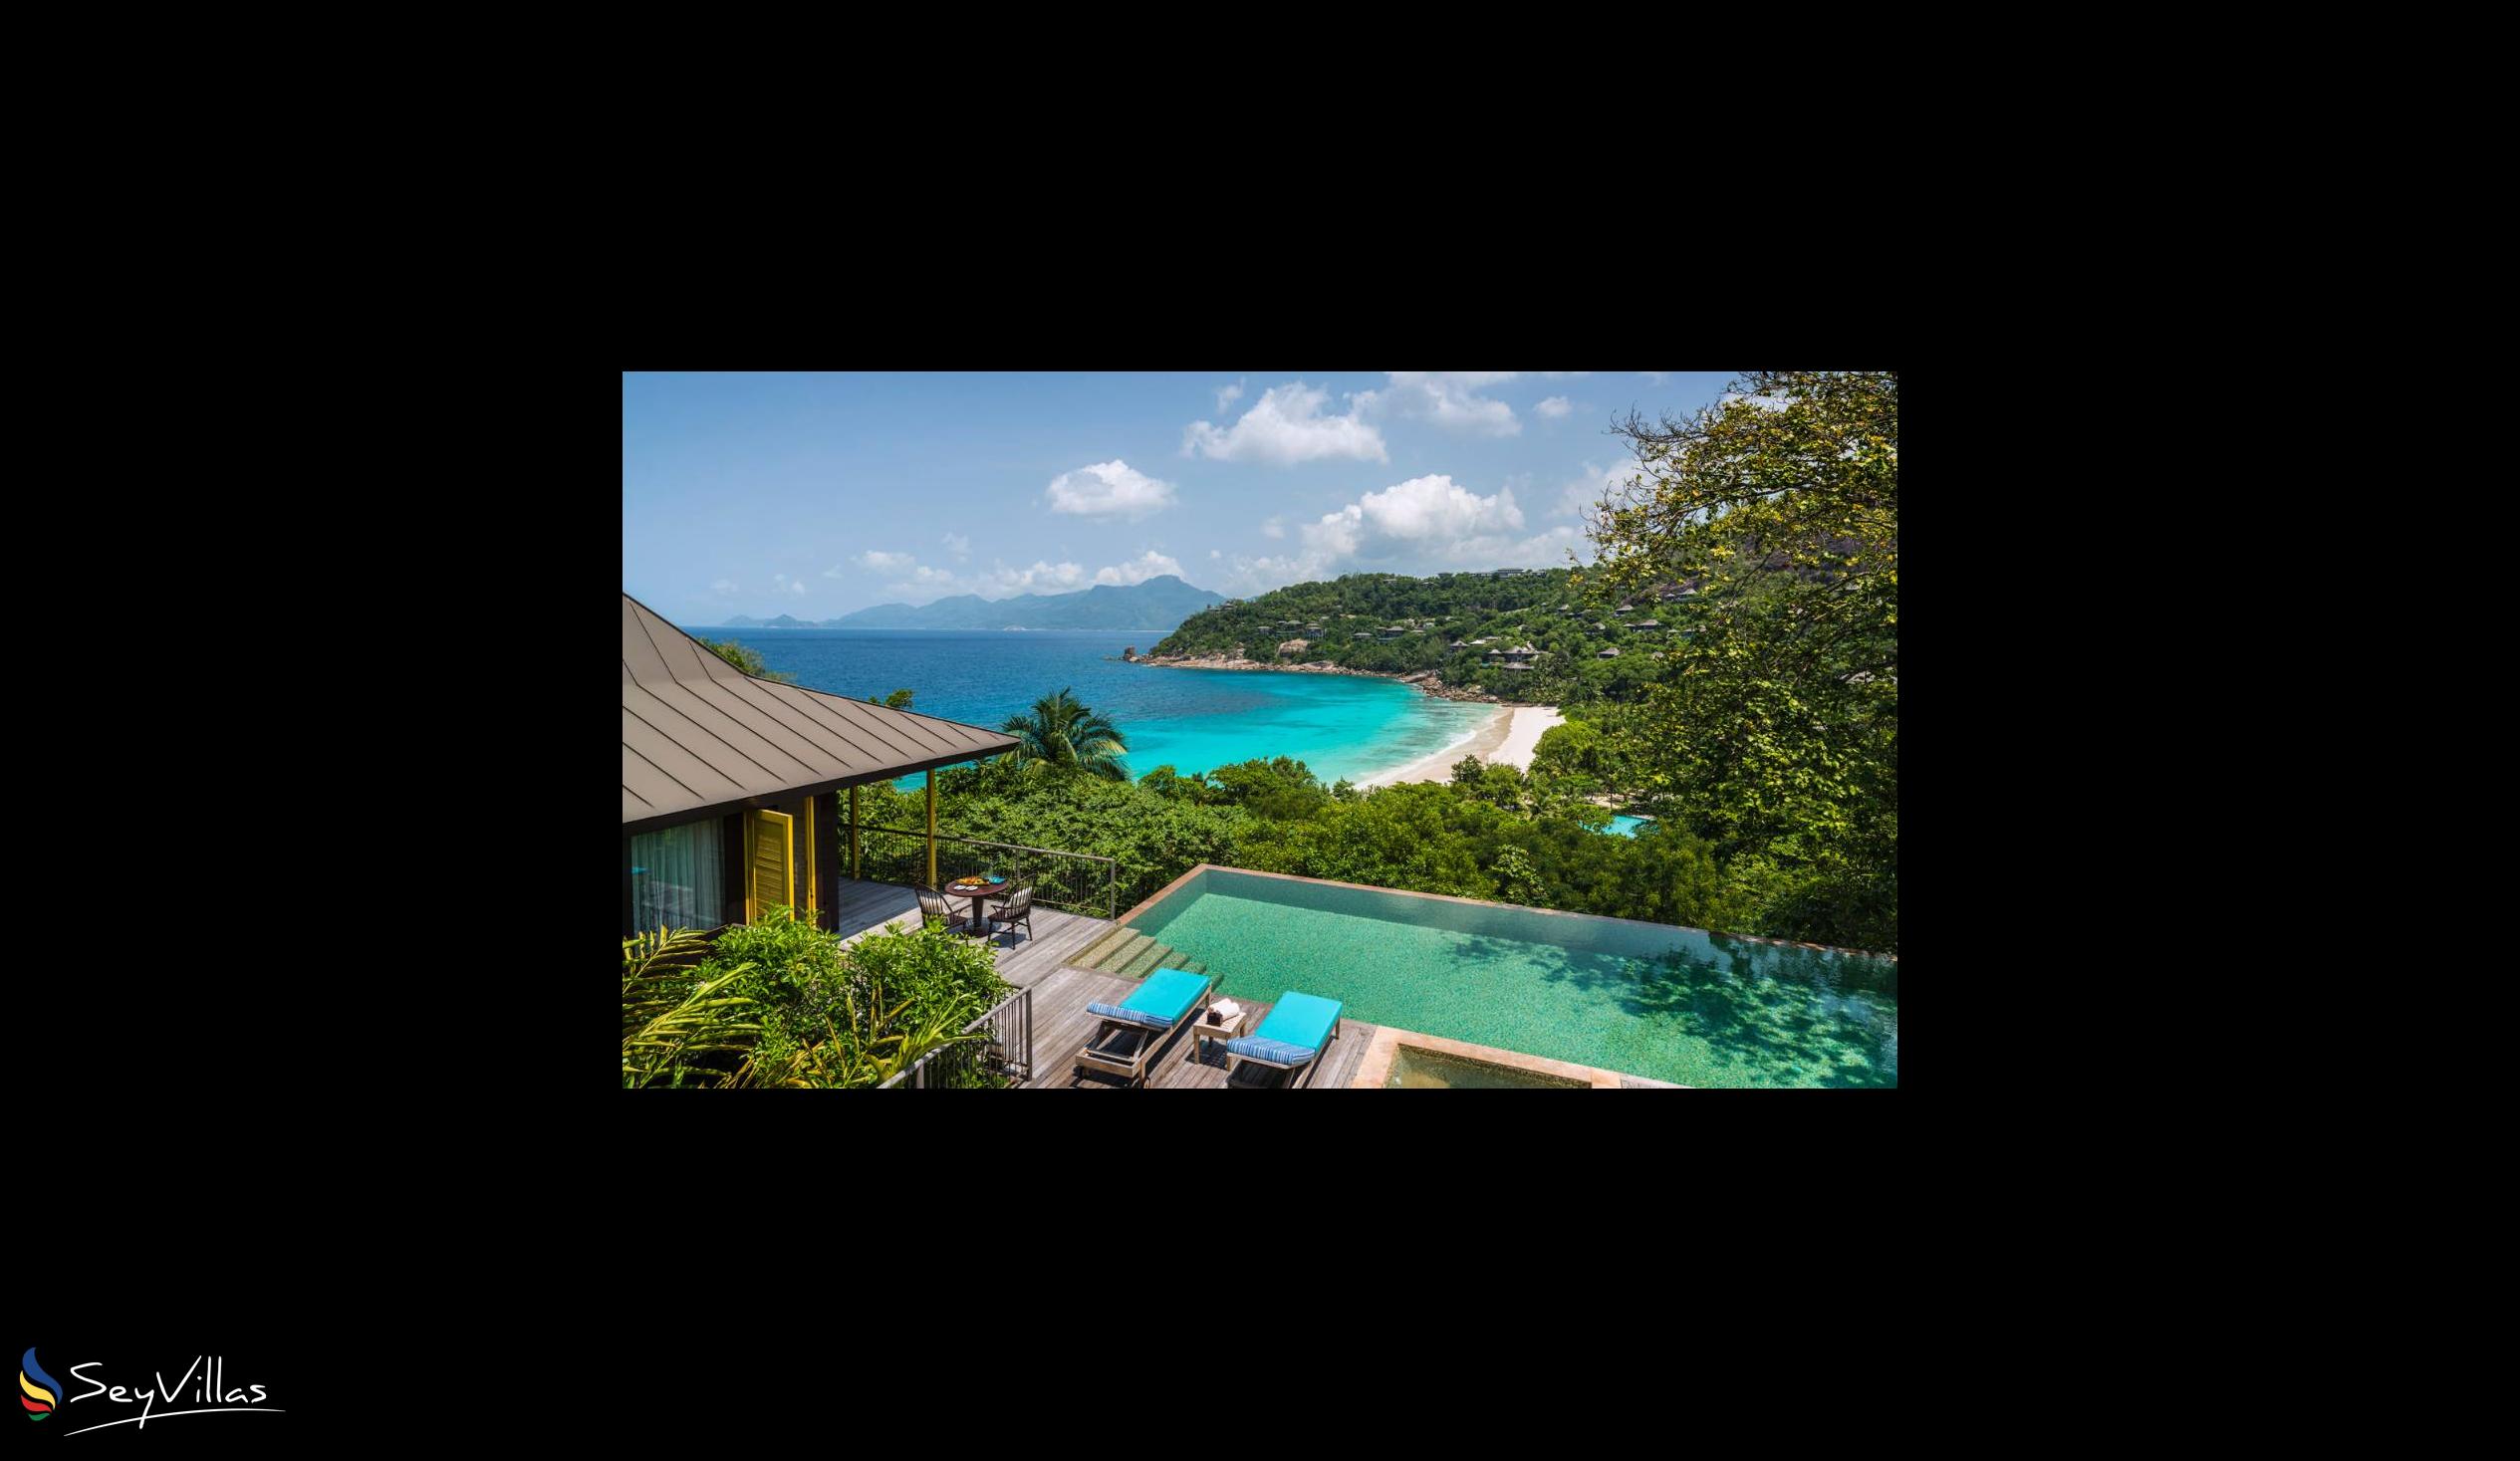 Foto 48: Four Seasons Resort - 2-Bedroom Ocean View Suite - Mahé (Seychellen)